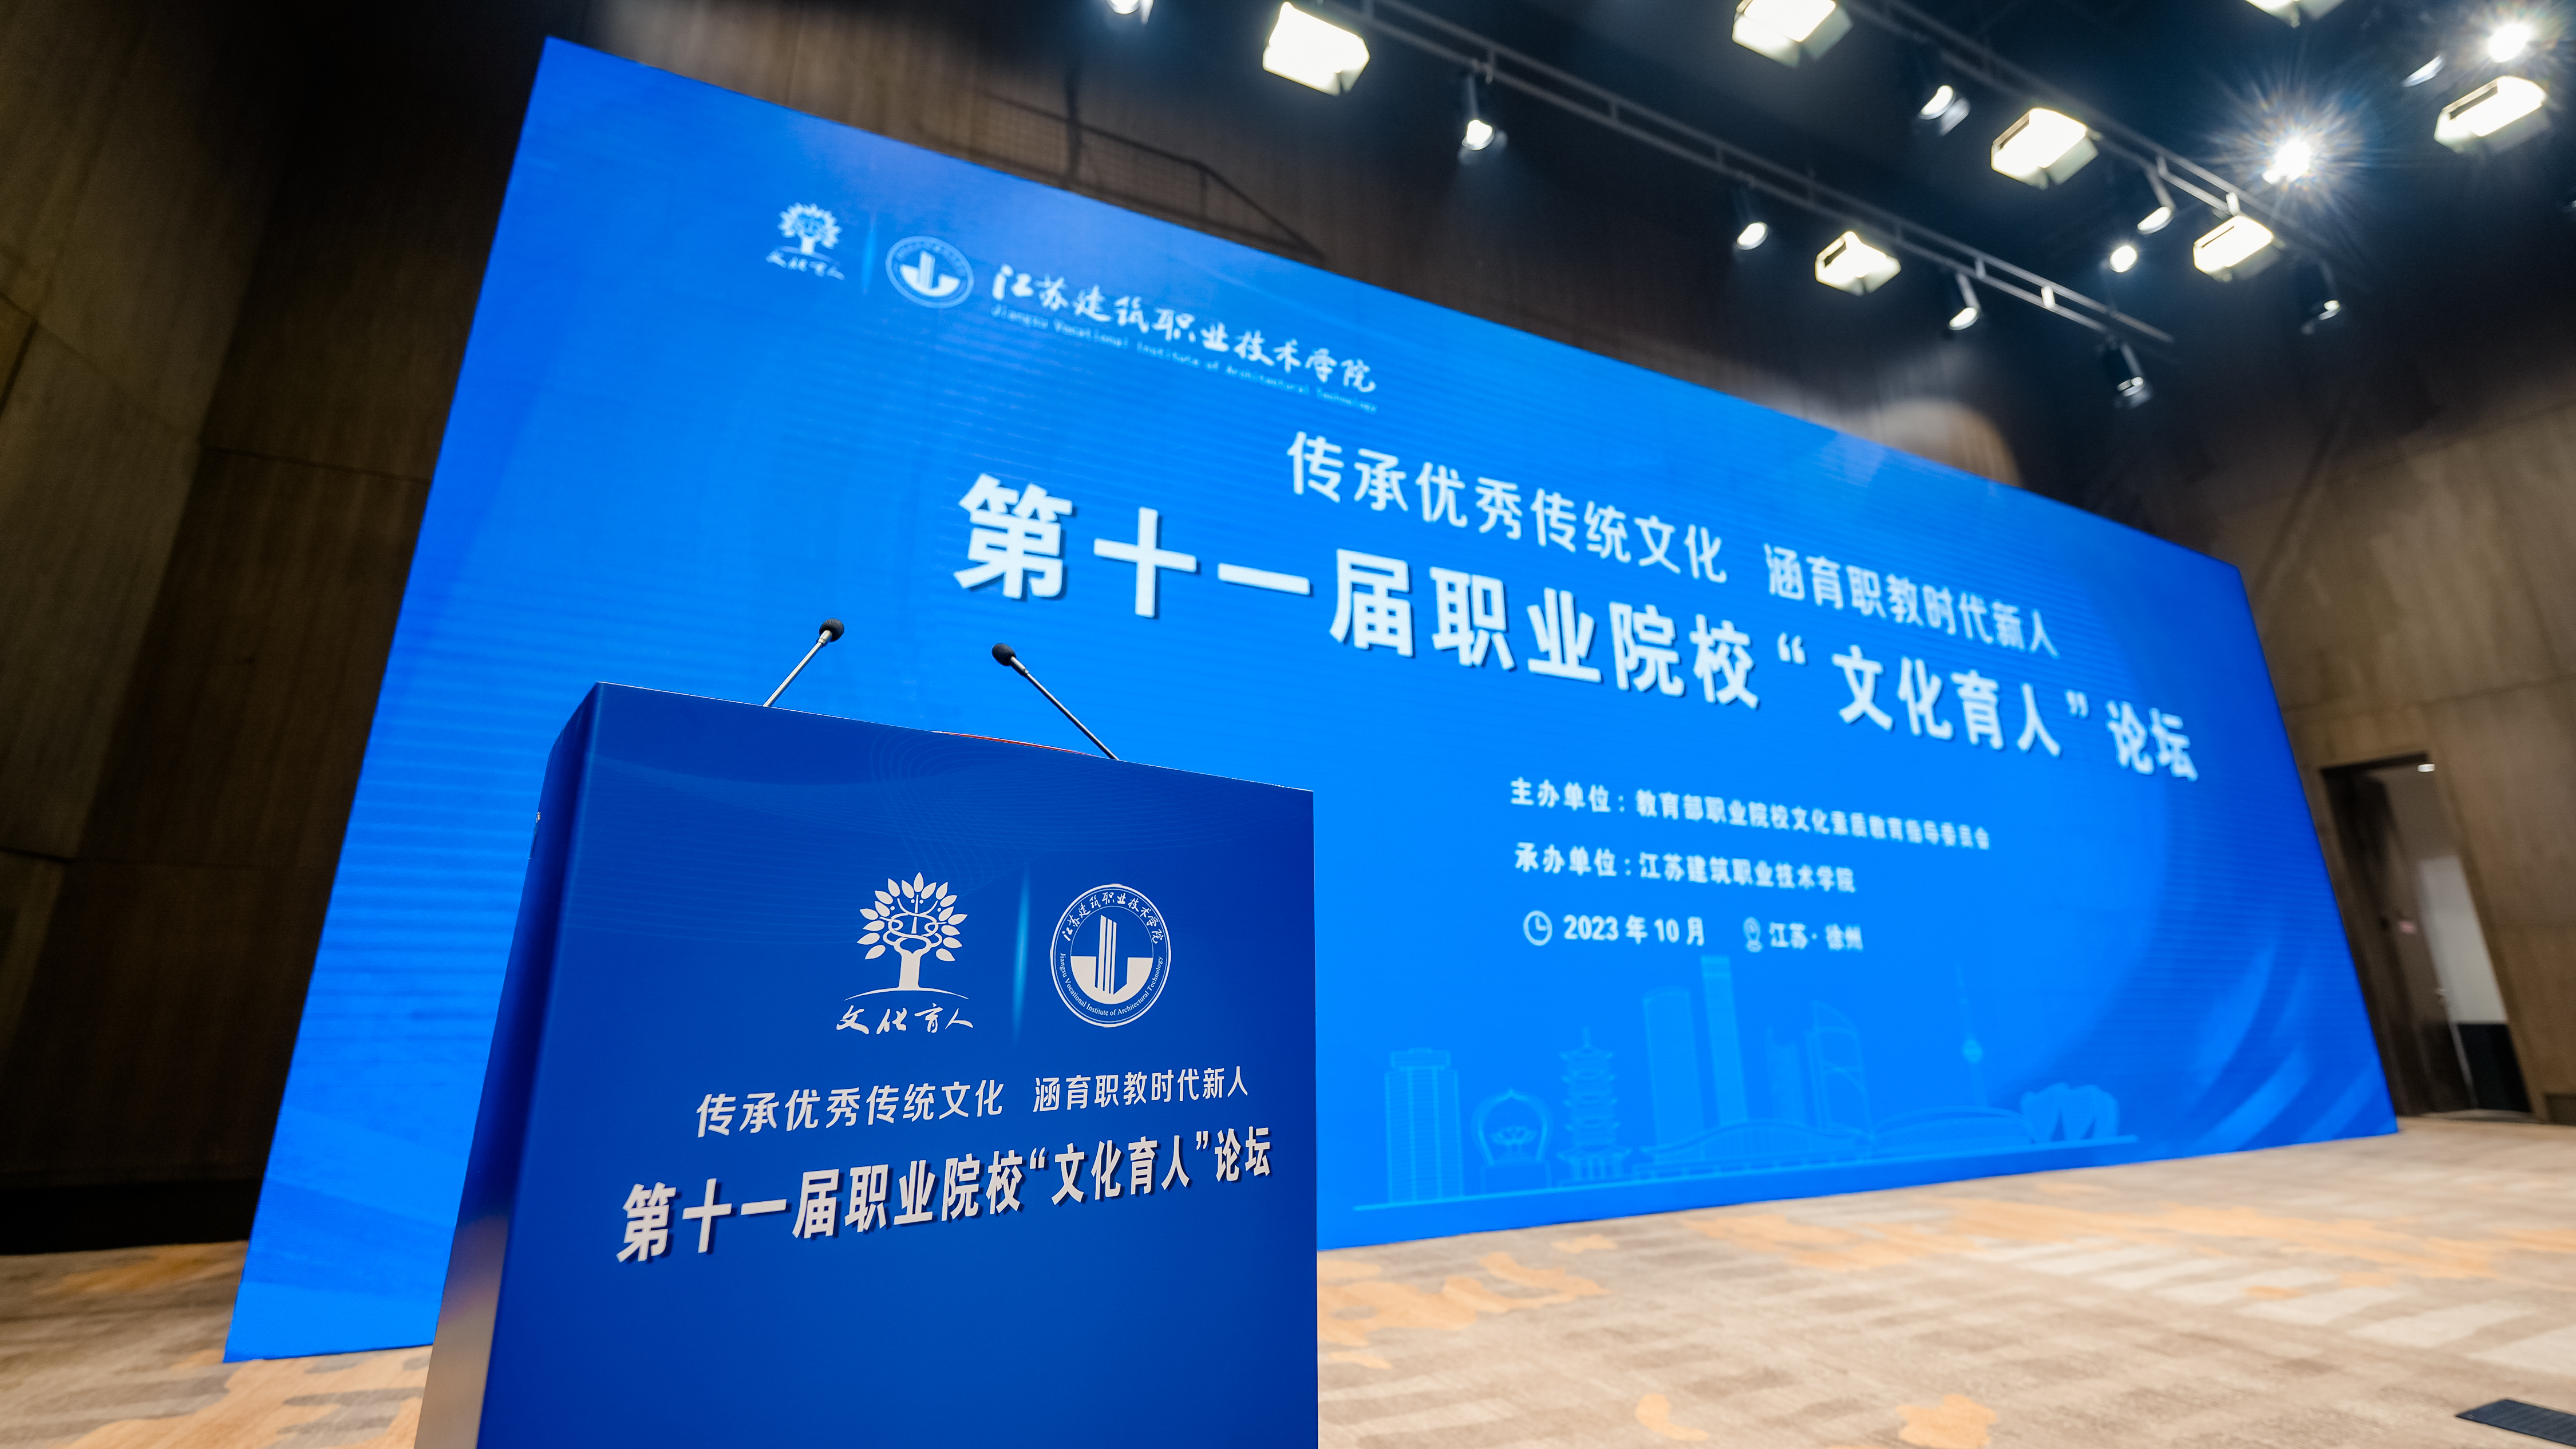 第十一届职业院校“文化育人”论坛在徐州开幕